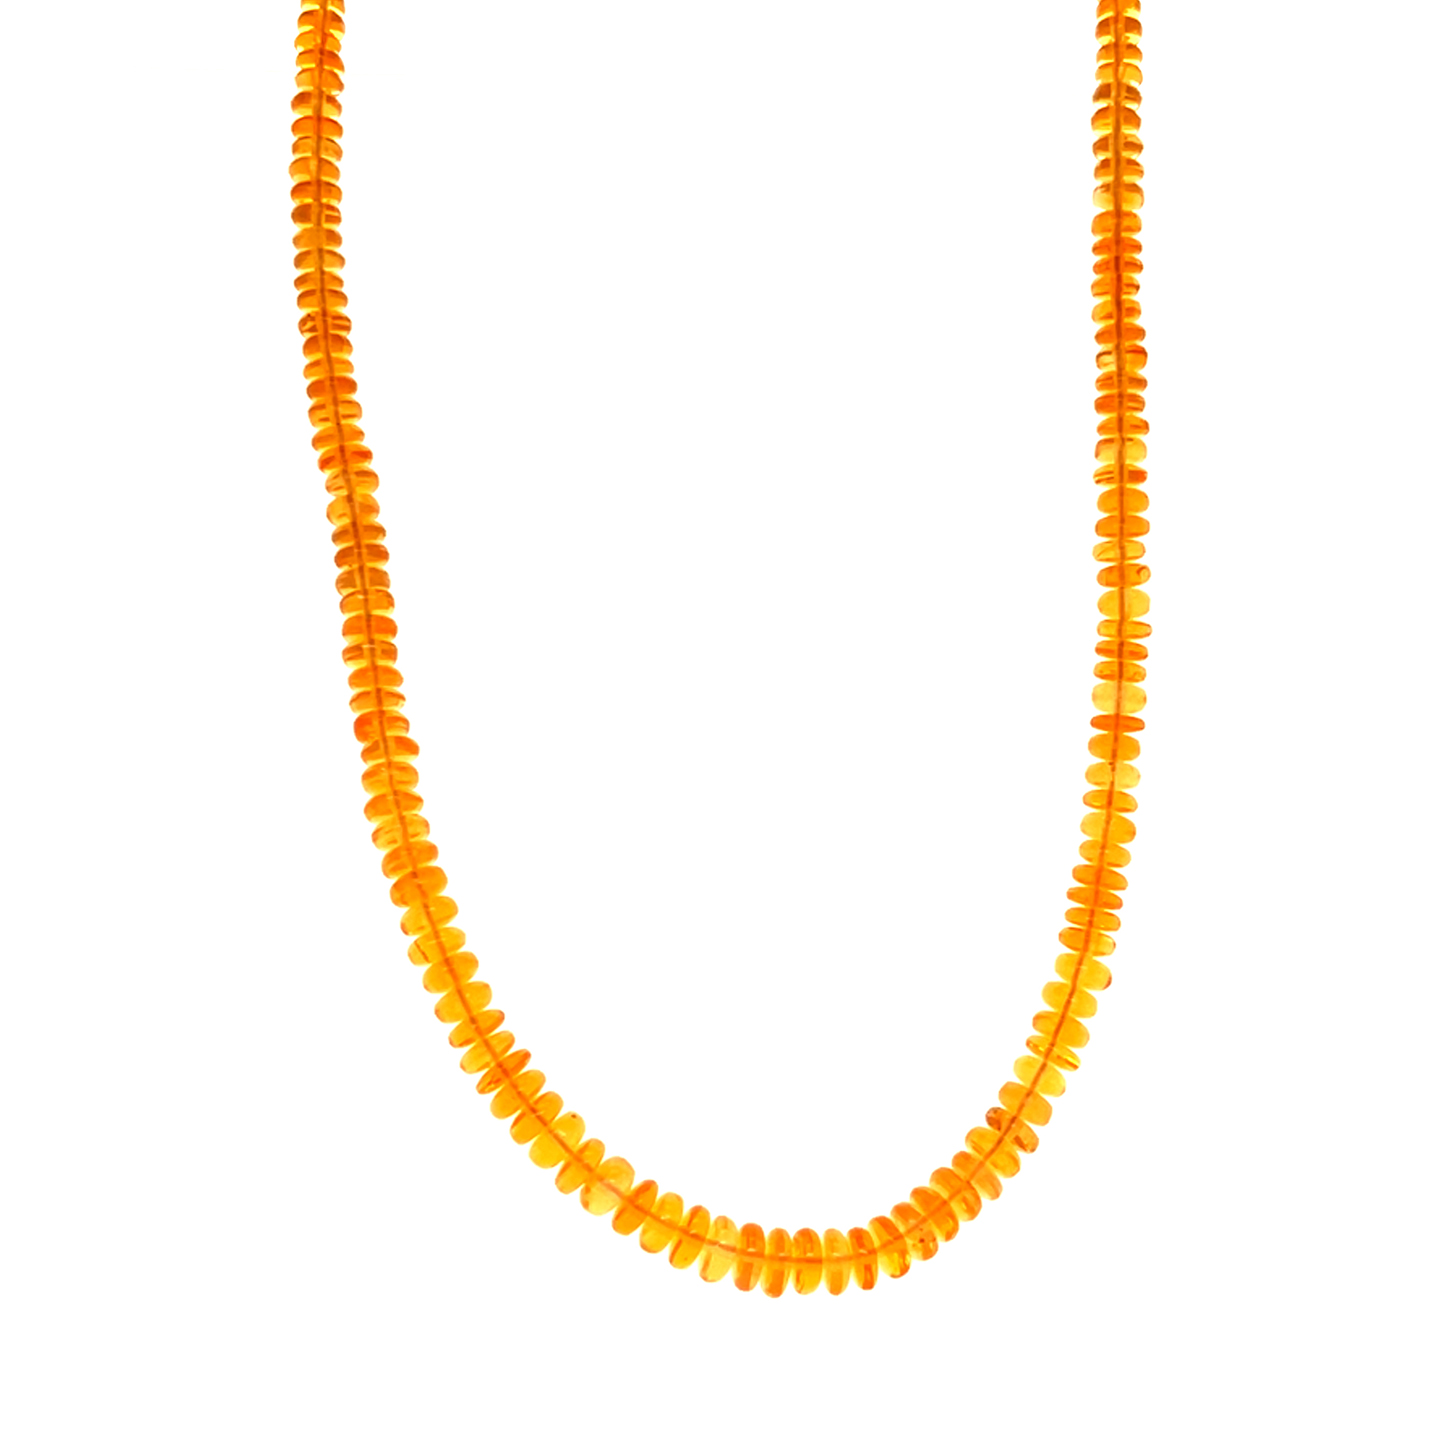 Feueropal orange, Edelstein Collier mit Karabinerverschluss Gelbgold 585/000,  ca. 45 cm, ca. 27,0 ct., Sogni d'oro Terra Opalis